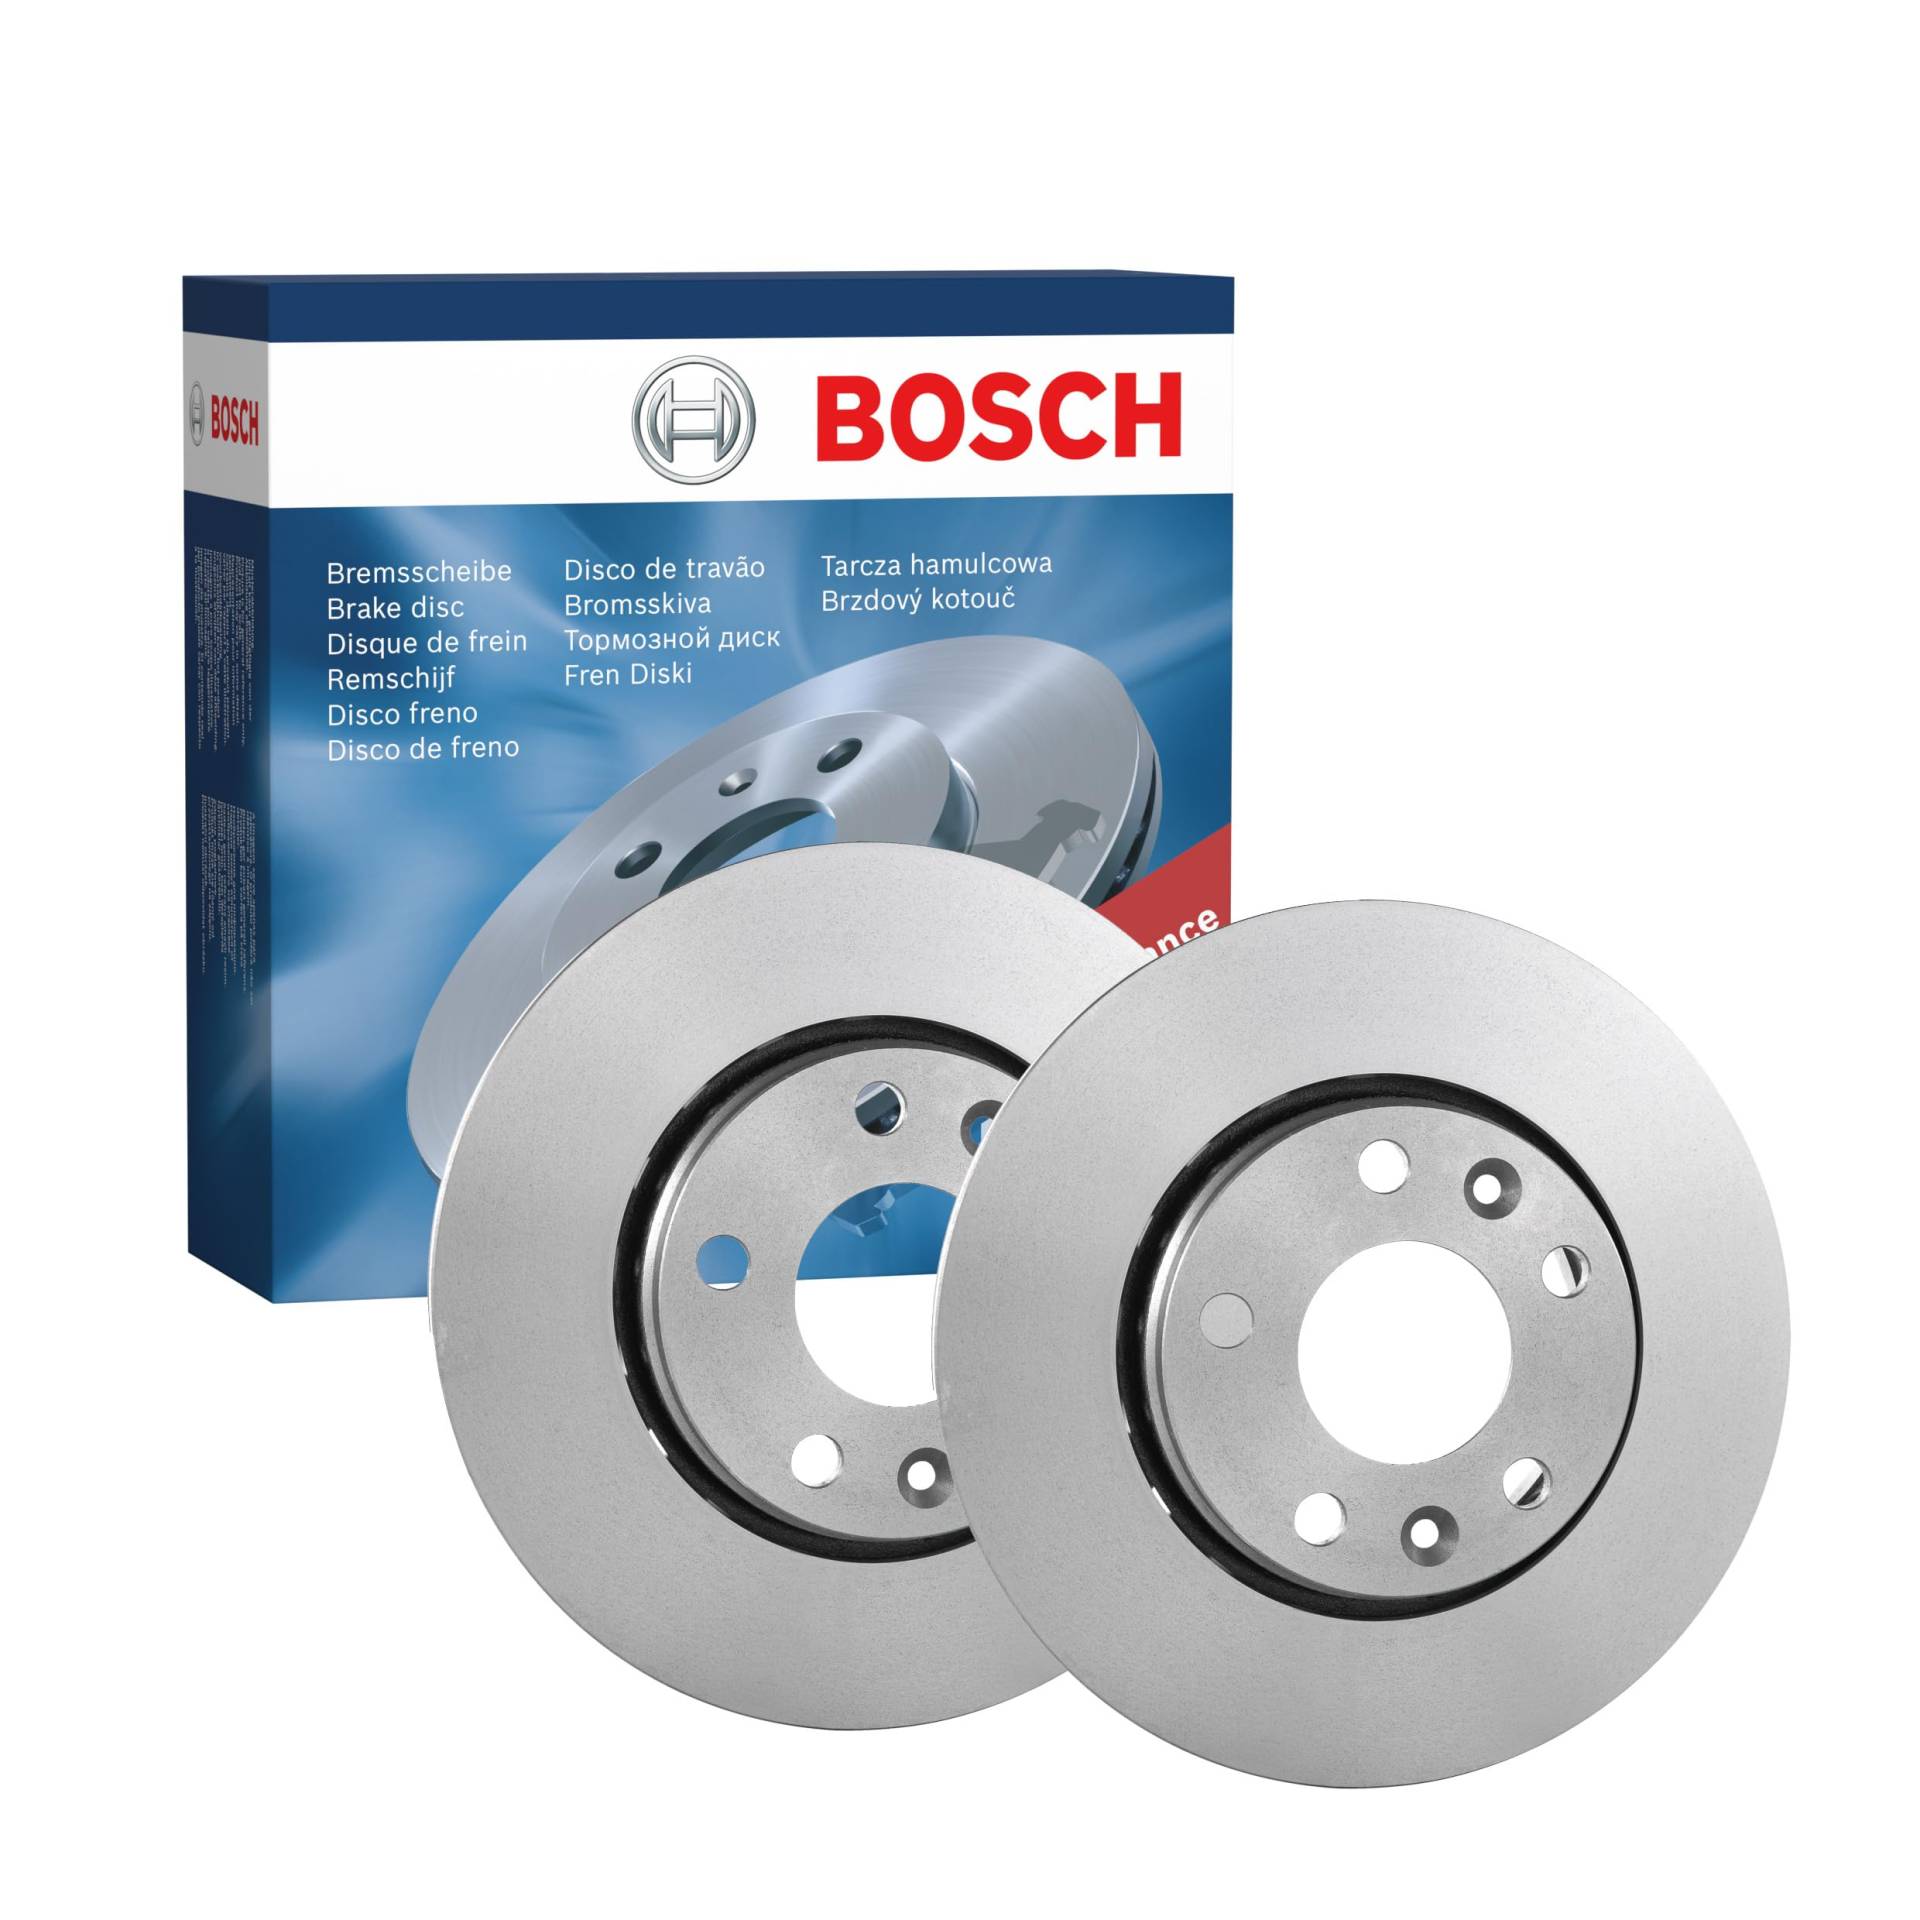 Bosch BD1397 Bremsscheiben - Vorderachse - ECE-R90 Zertifizierung - zwei Bremsscheiben pro Set von Bosch Automotive